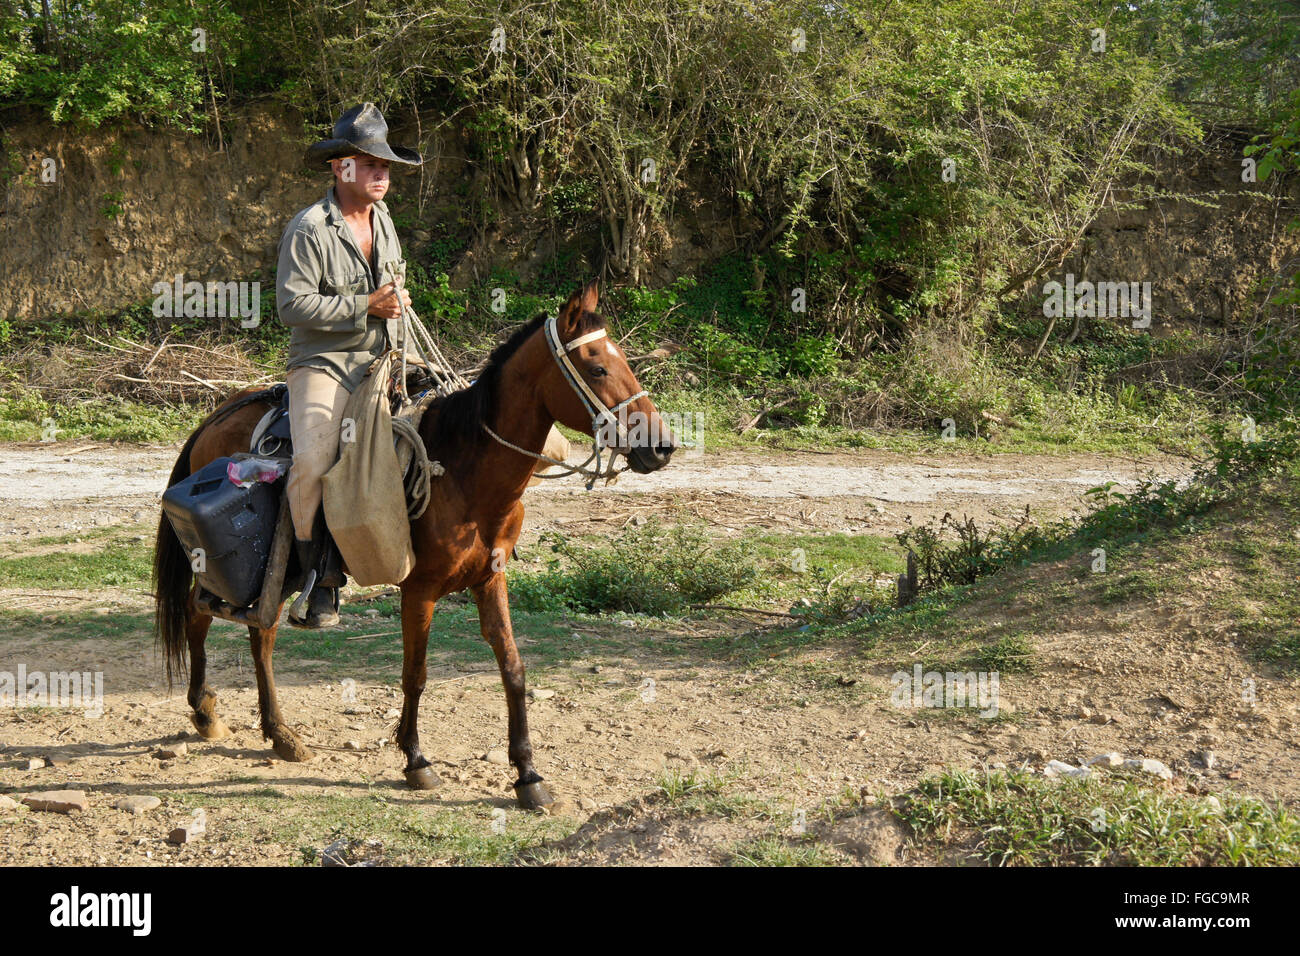 Man riding horse, Valle de los Ingenios (Valley of the Sugar Mills), Trinidad, Cuba Stock Photo